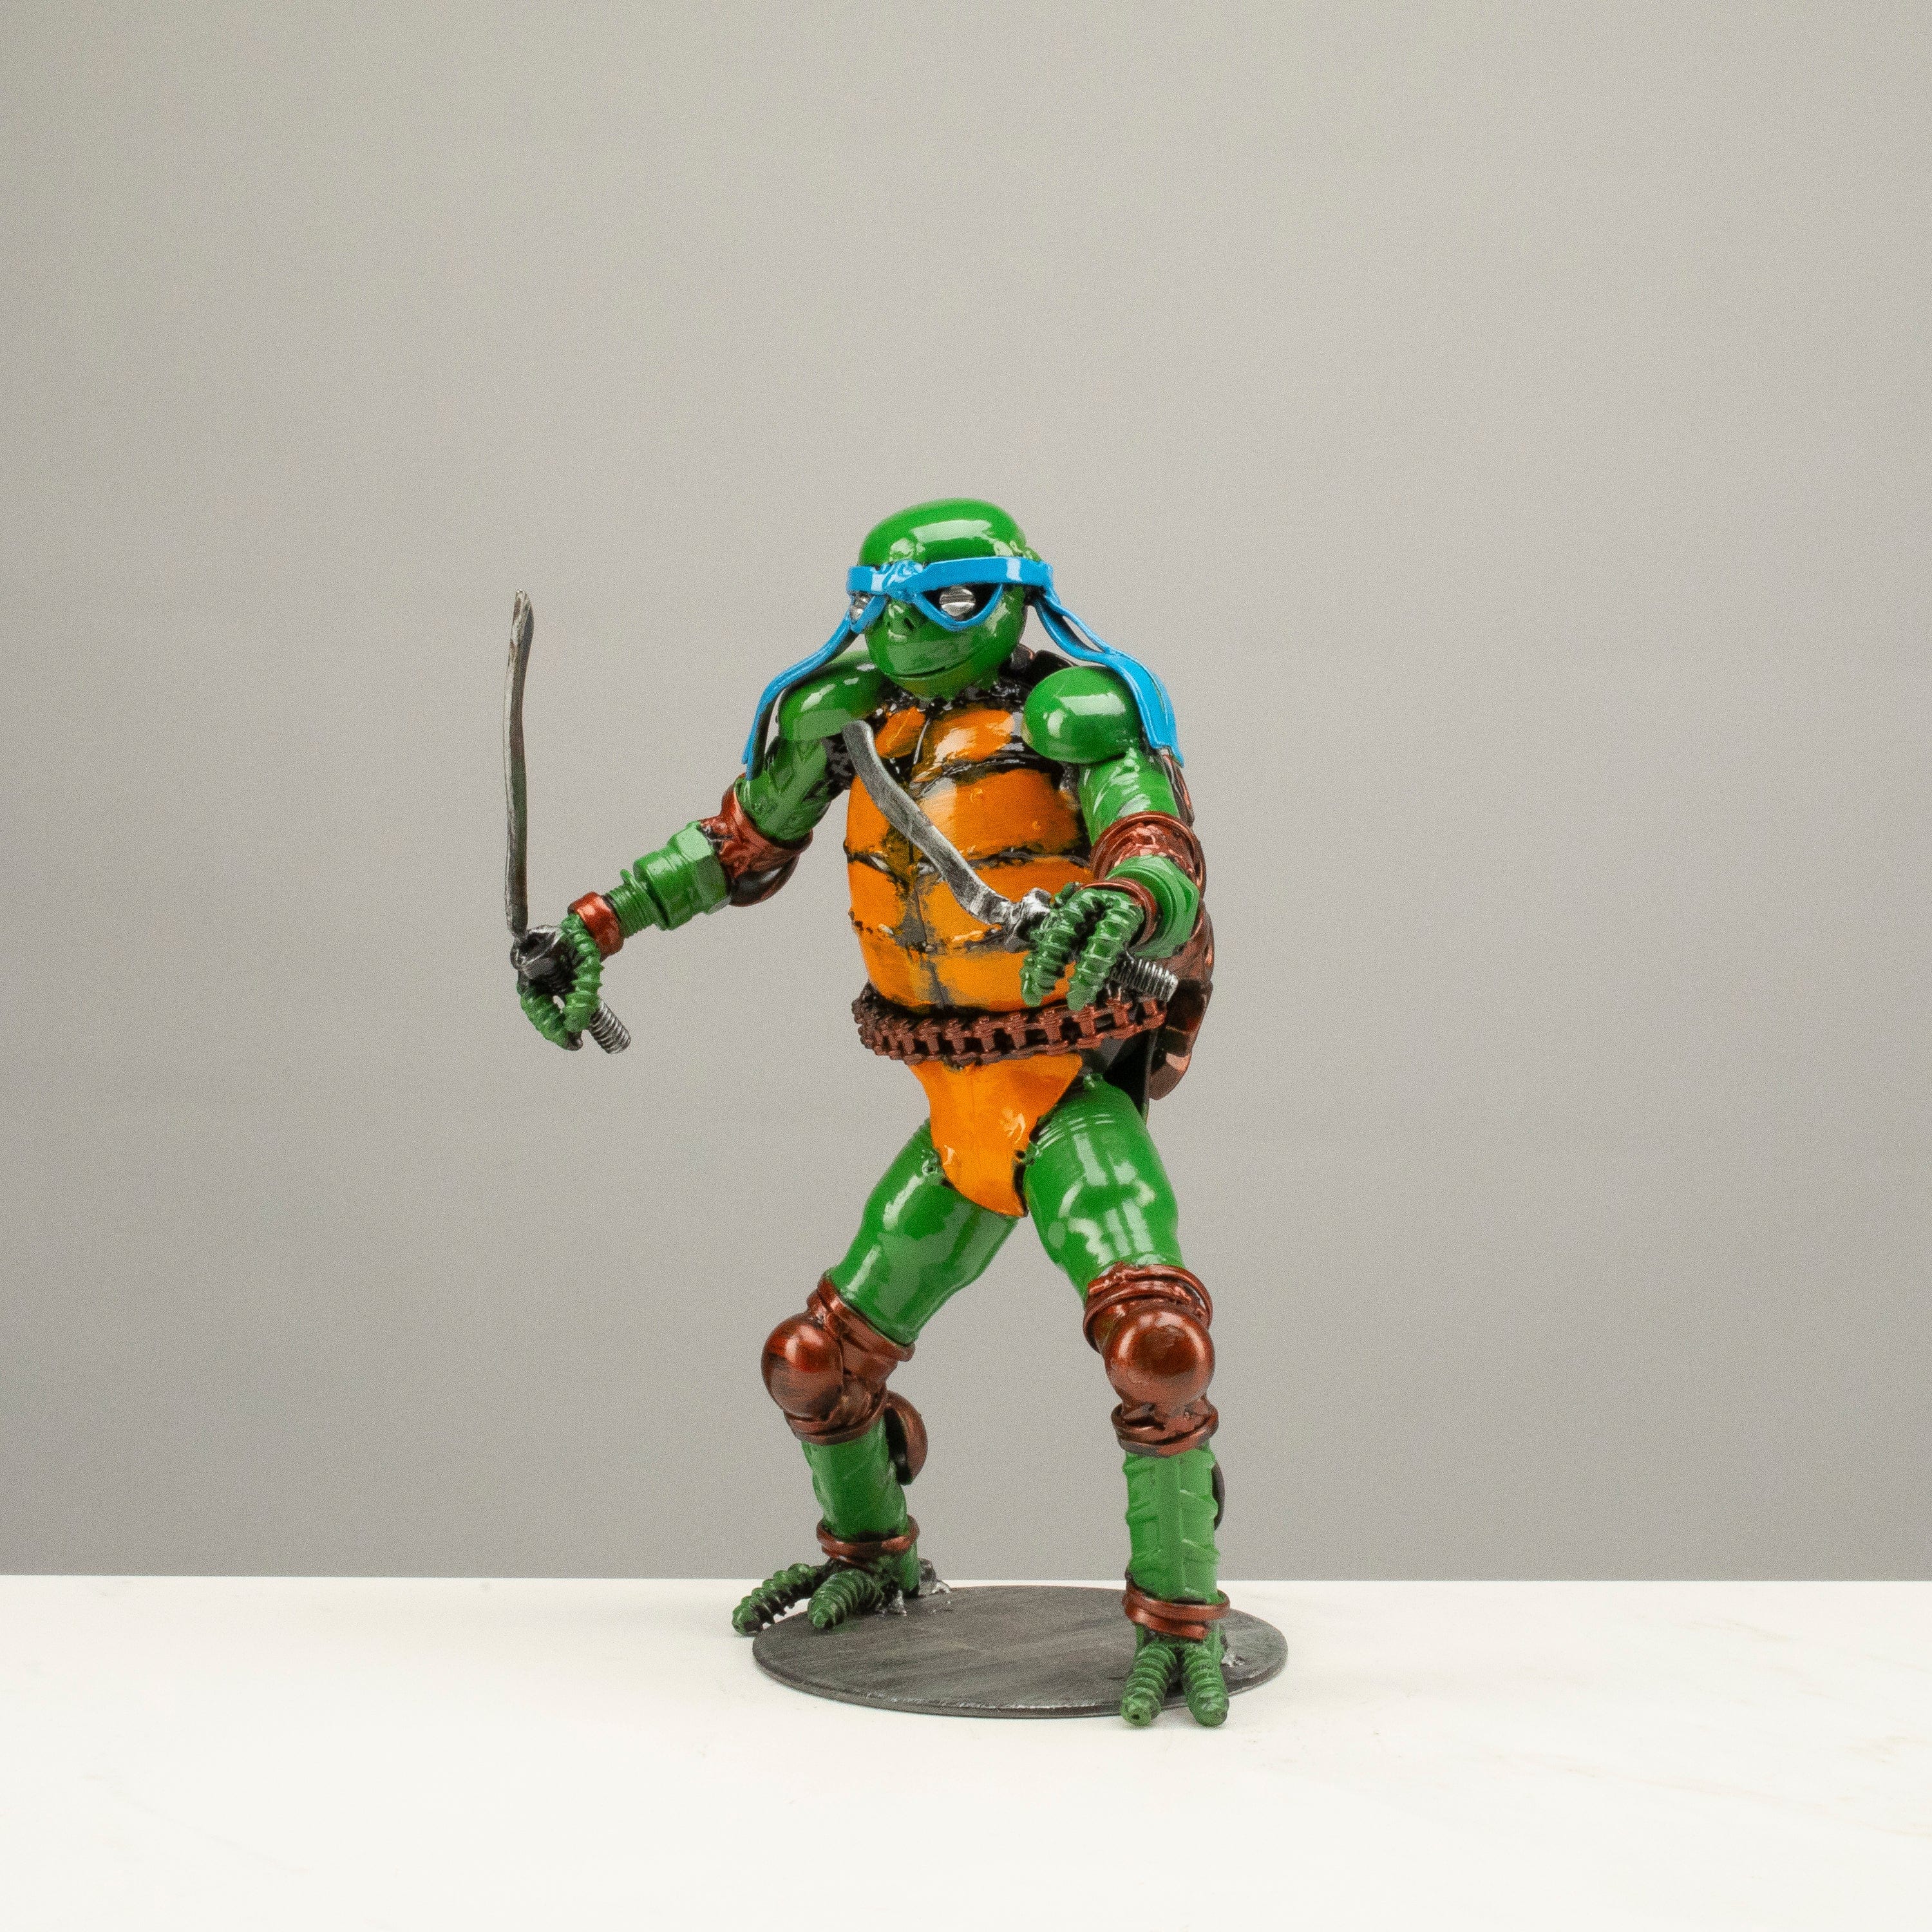 Kalifano Recycled Metal Art 9.5" Leonadro Ninja Turtle Inspired Recycled Metal Sculpture RMS-600NTL-N